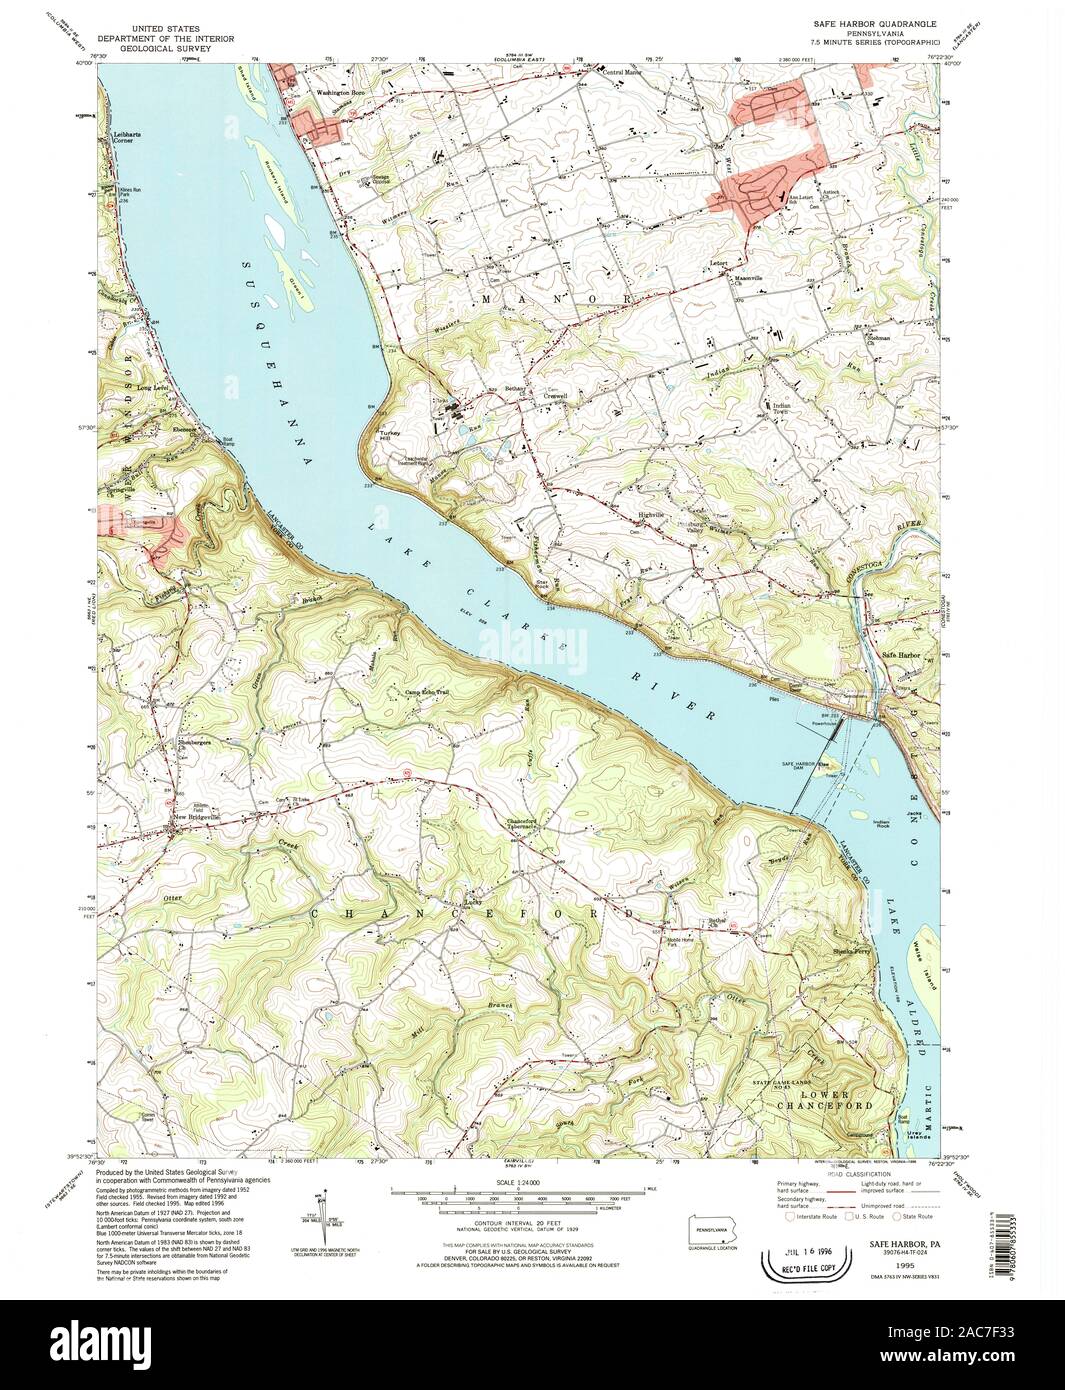 USGS Mapa TOPO Pennsylvania PA Safe Harbor 1995 223897 24000 Restauración Foto de stock